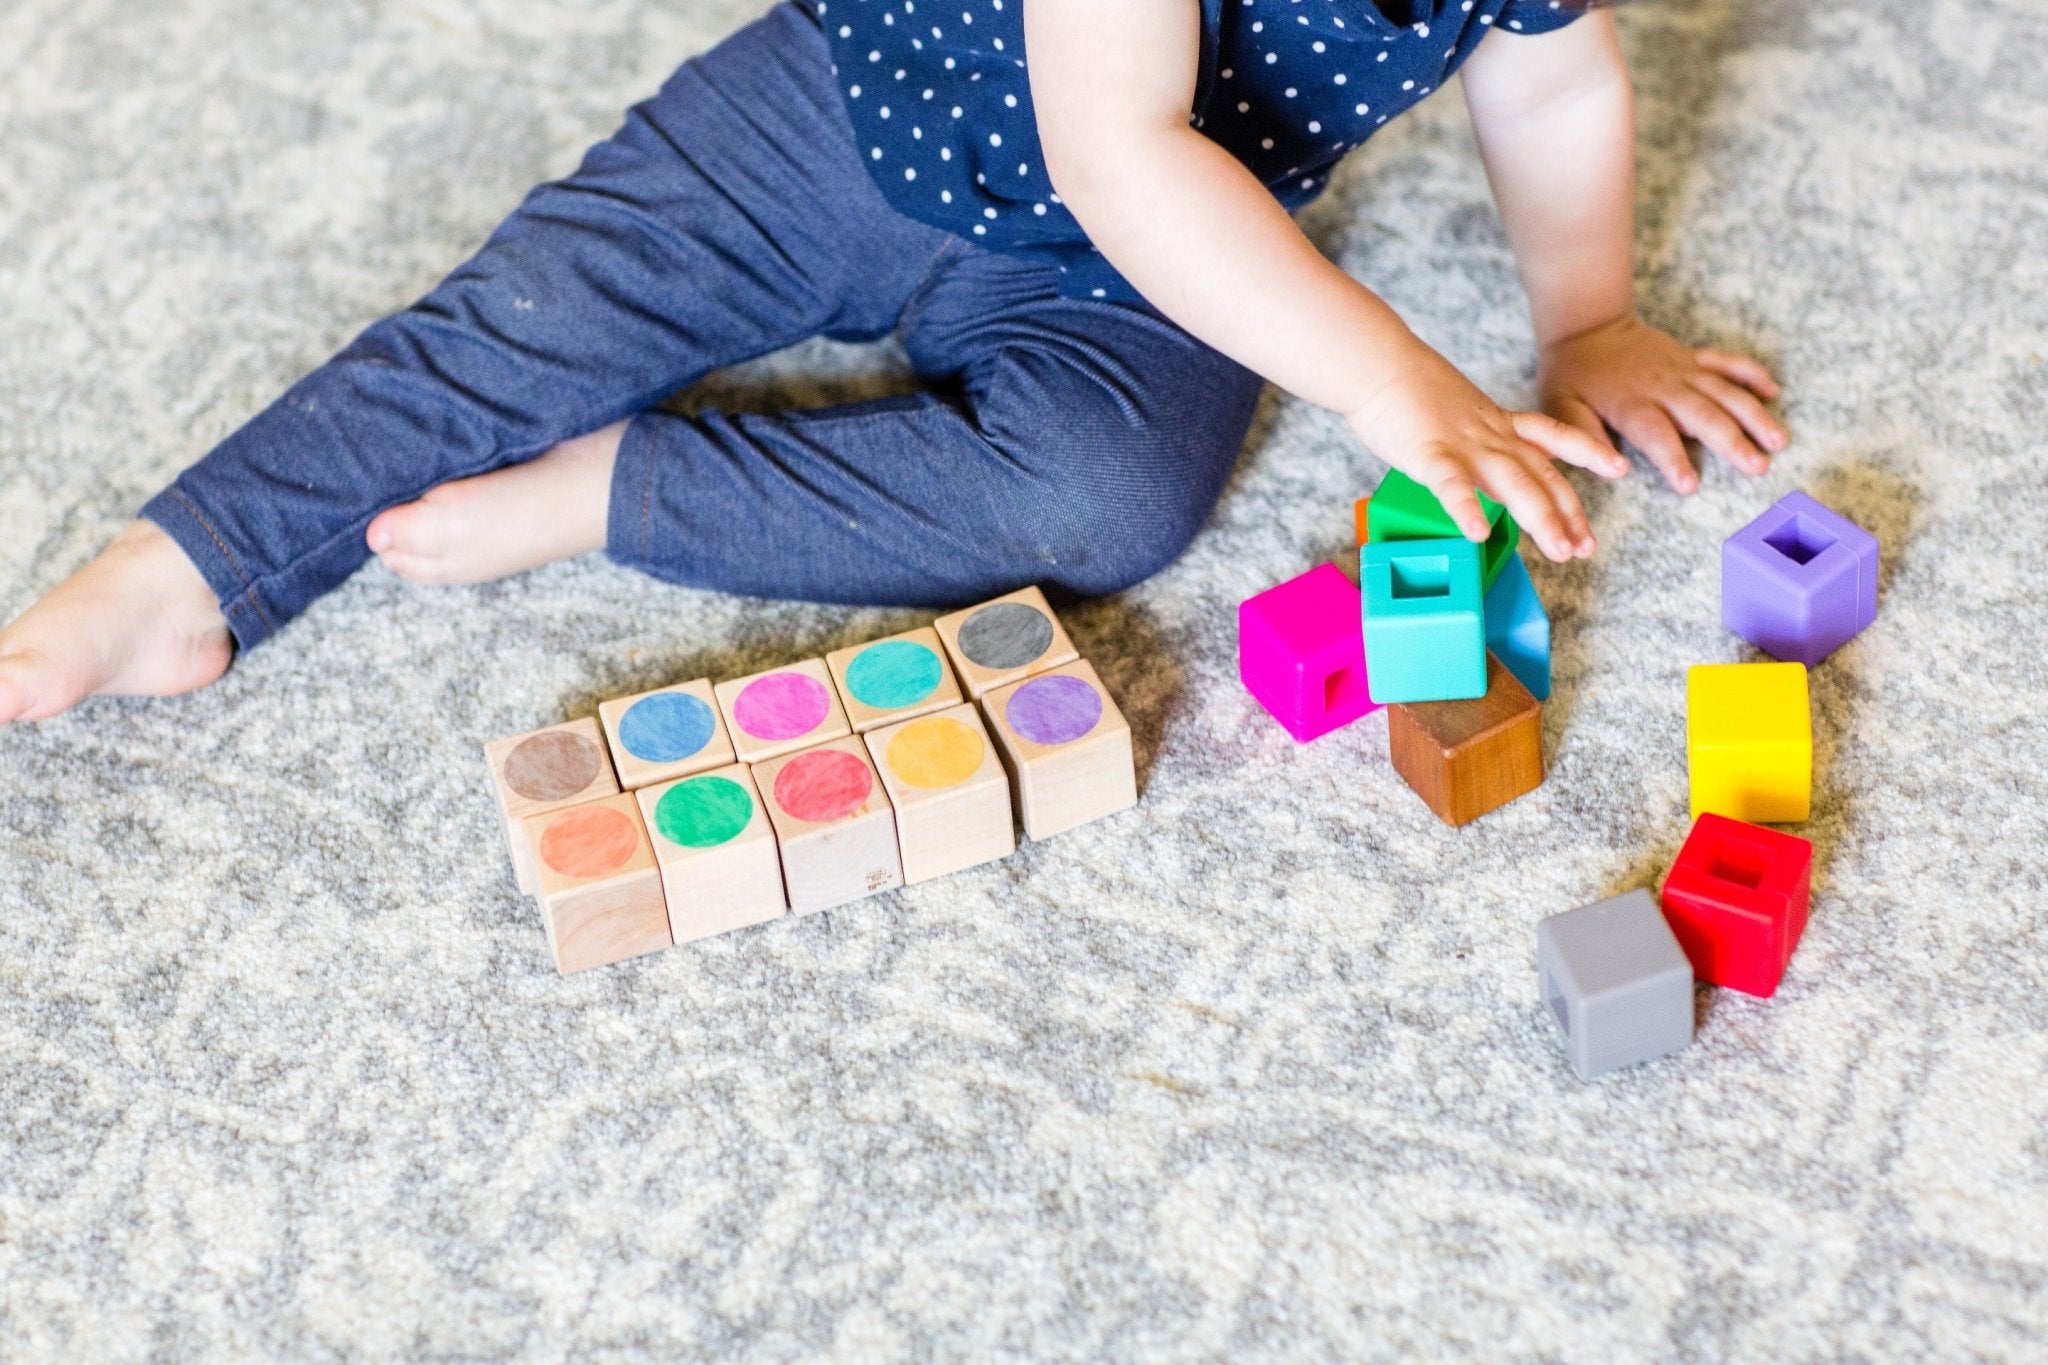 Bannor Toys Paint Palette Blocks